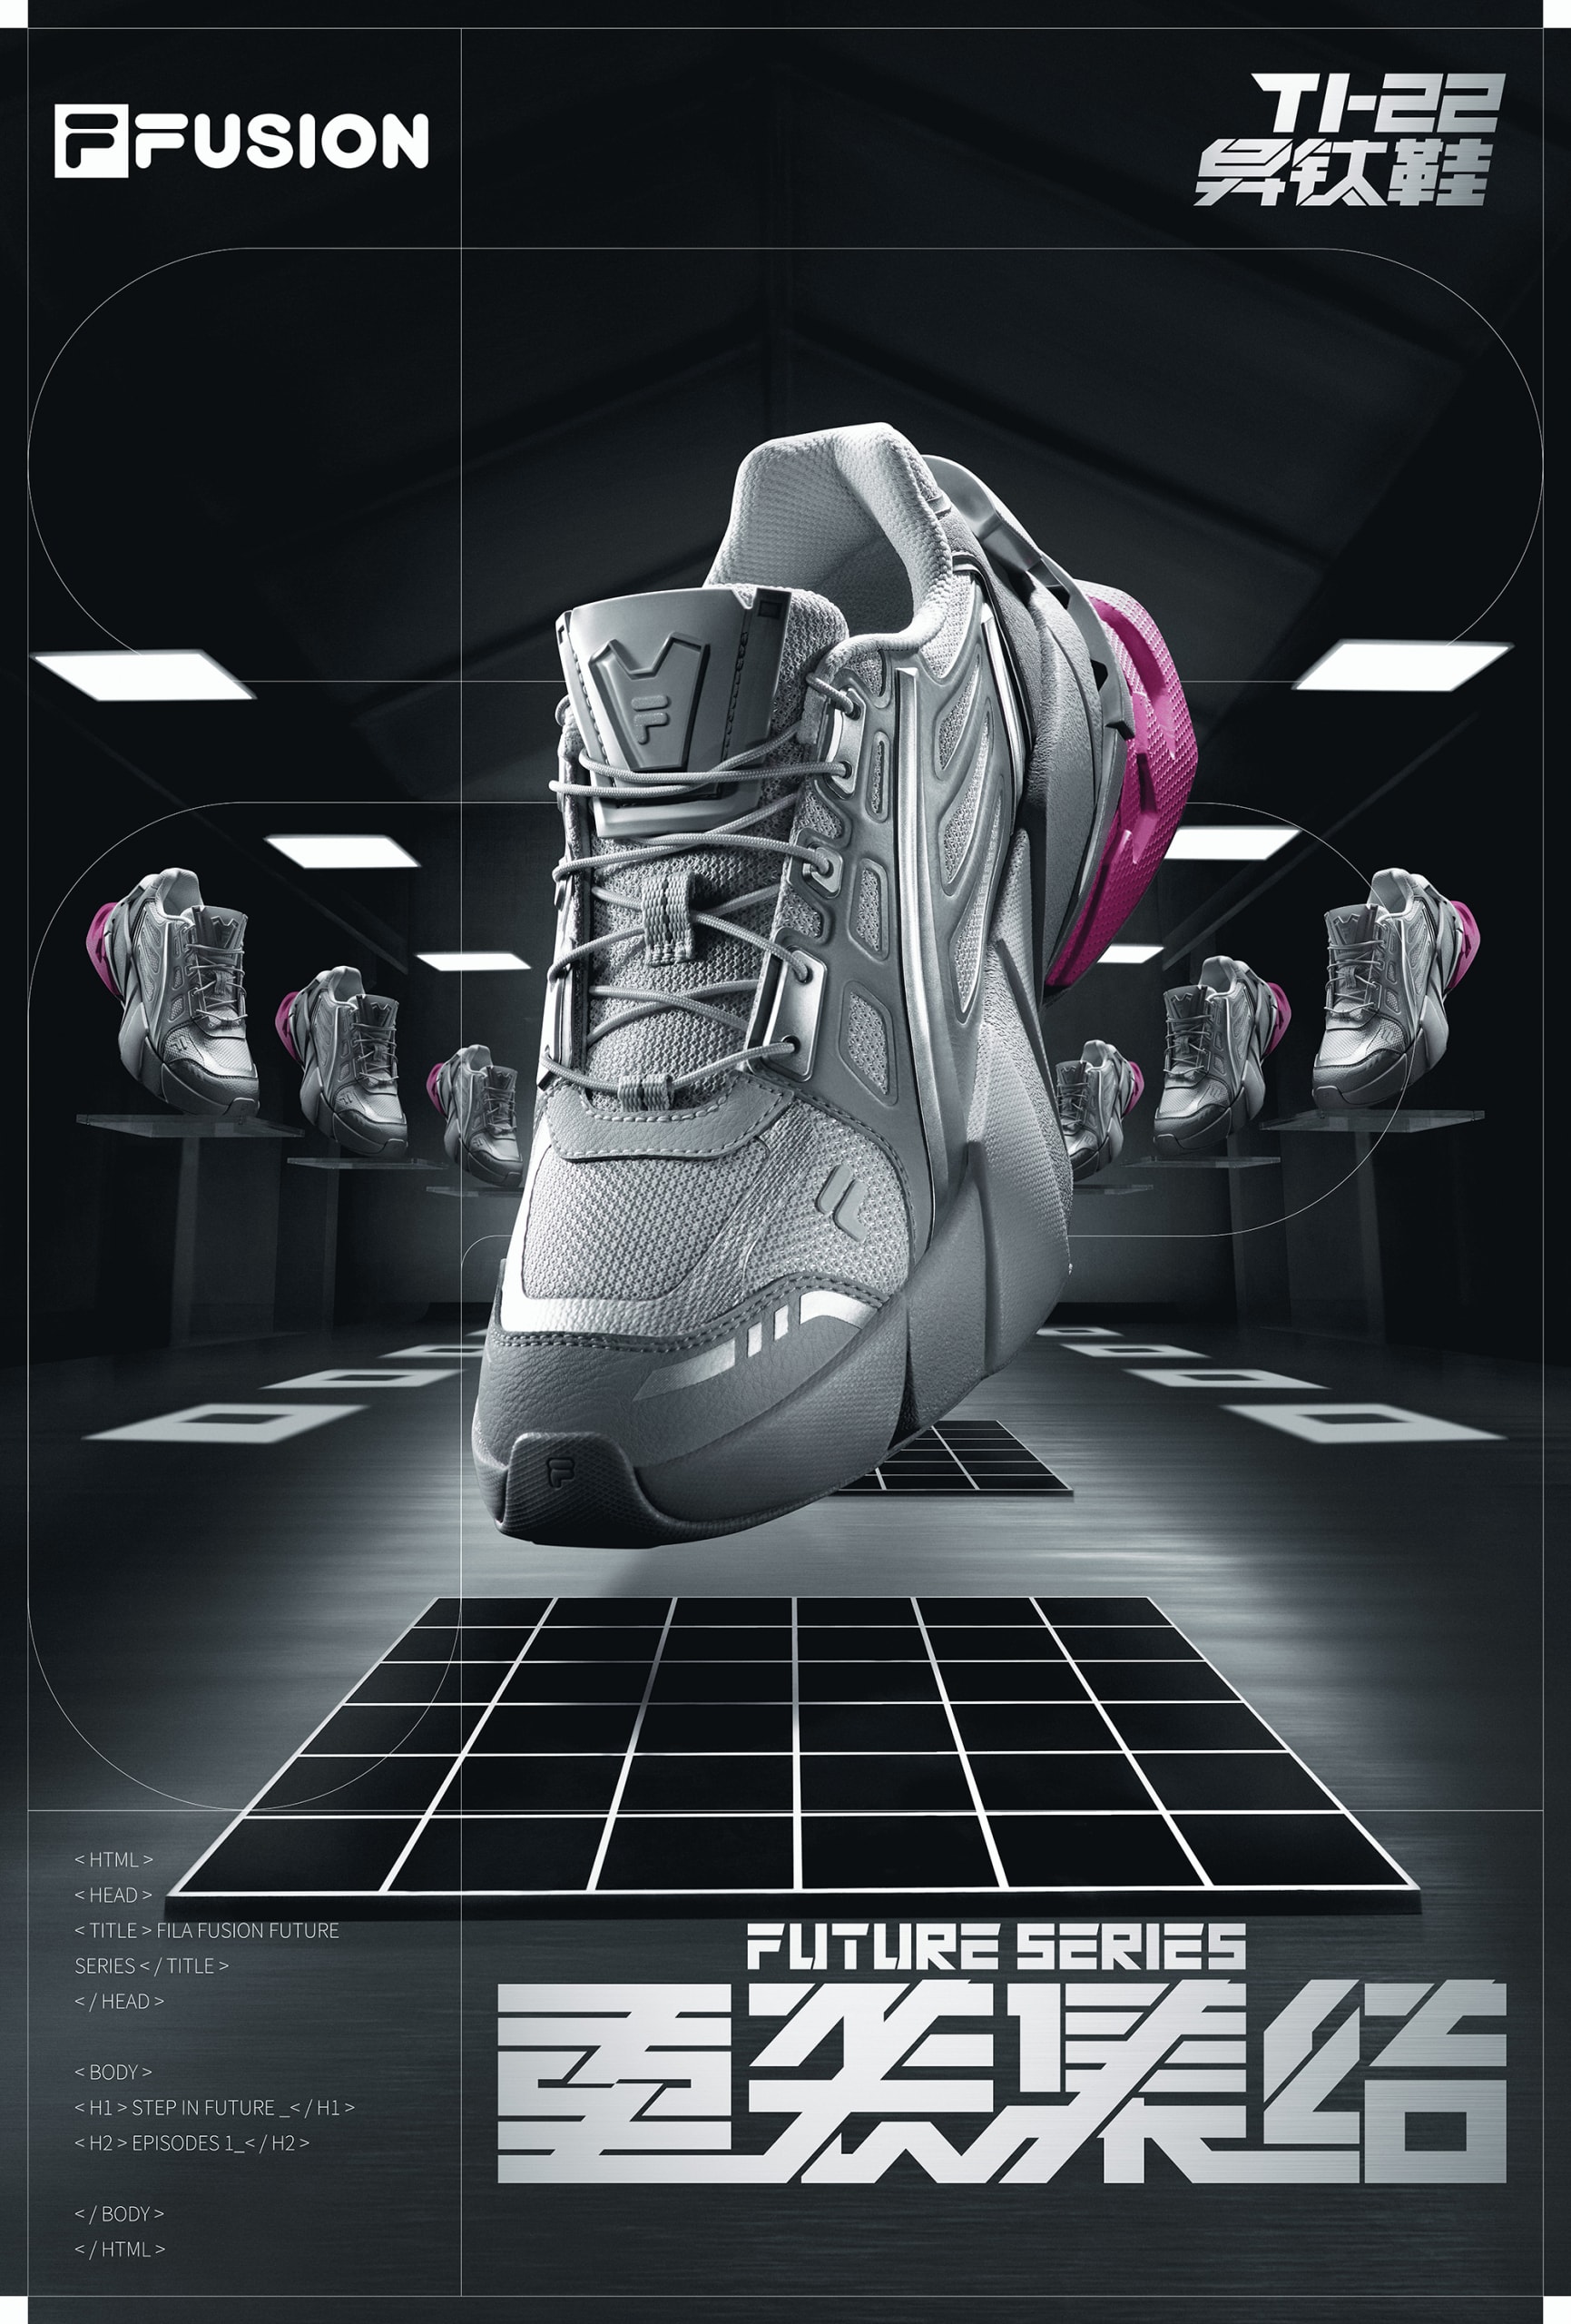 FILA FUSION 发布全新未来潮鞋 TI-22 异钛鞋